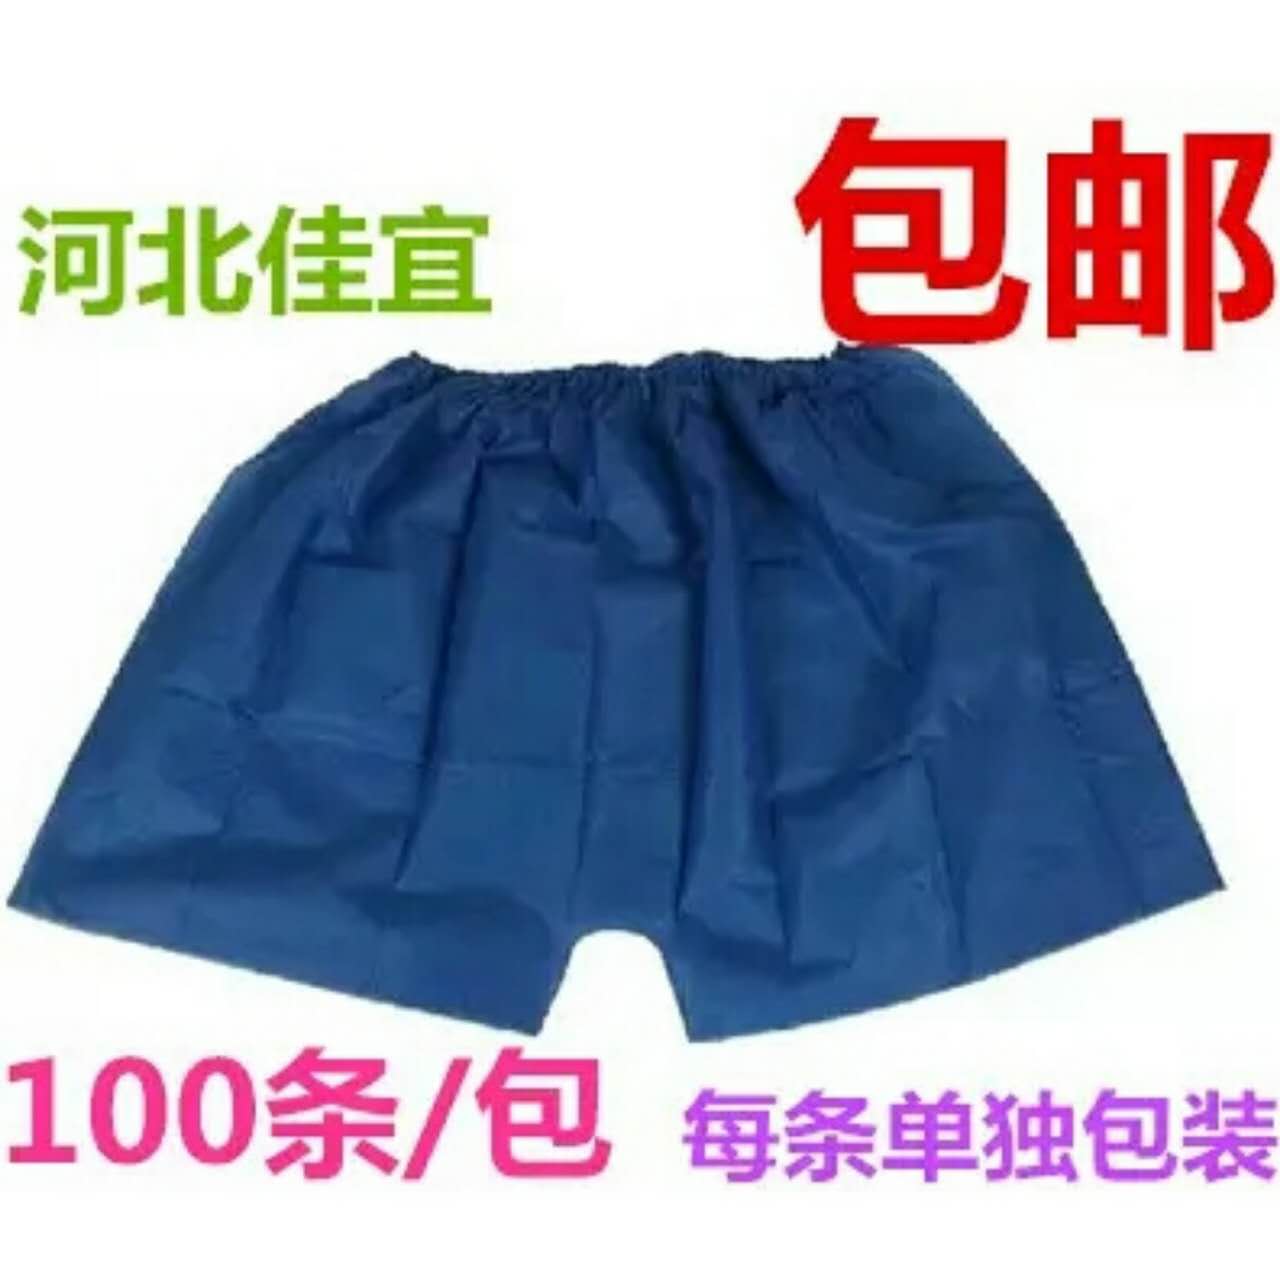 [ 18 29] Disposable Boxer Shorts Non Woven Underwear Men S Foot Bath